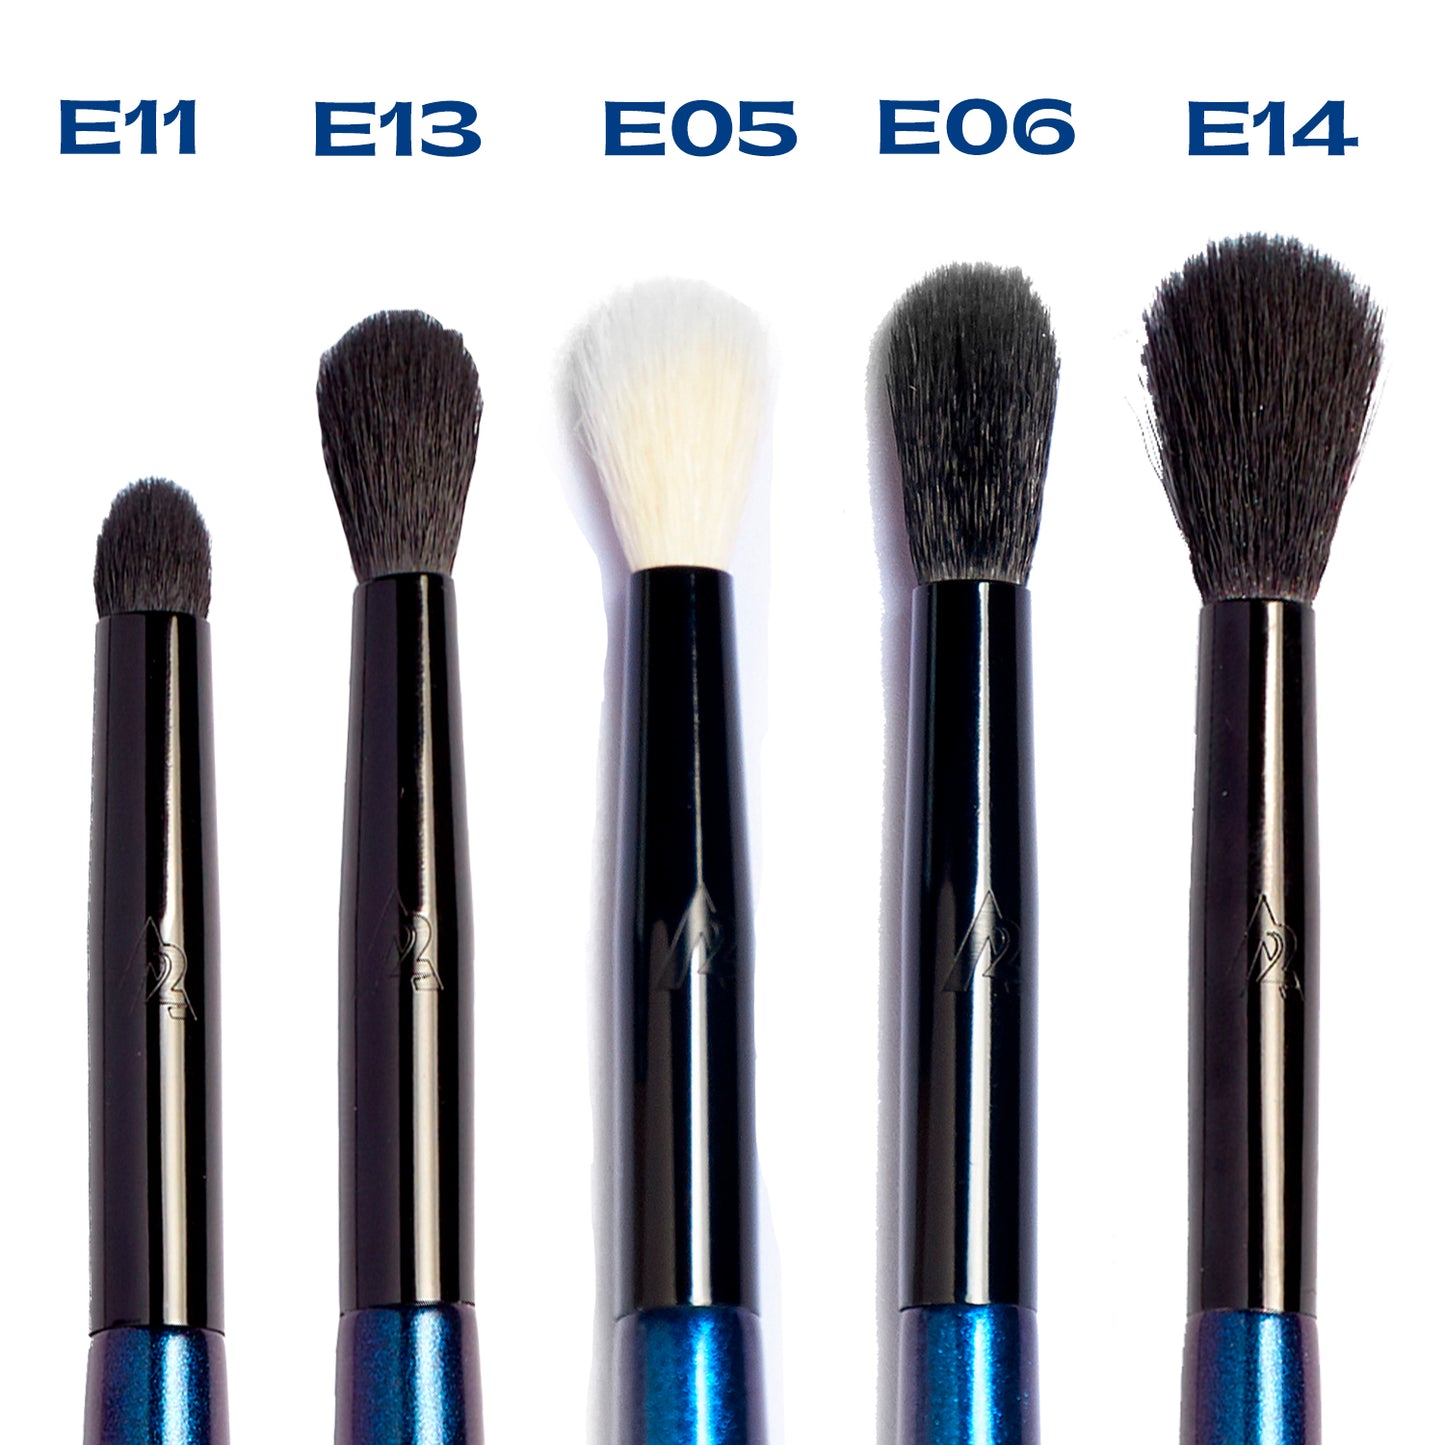 E05 Blender Makeup Brush